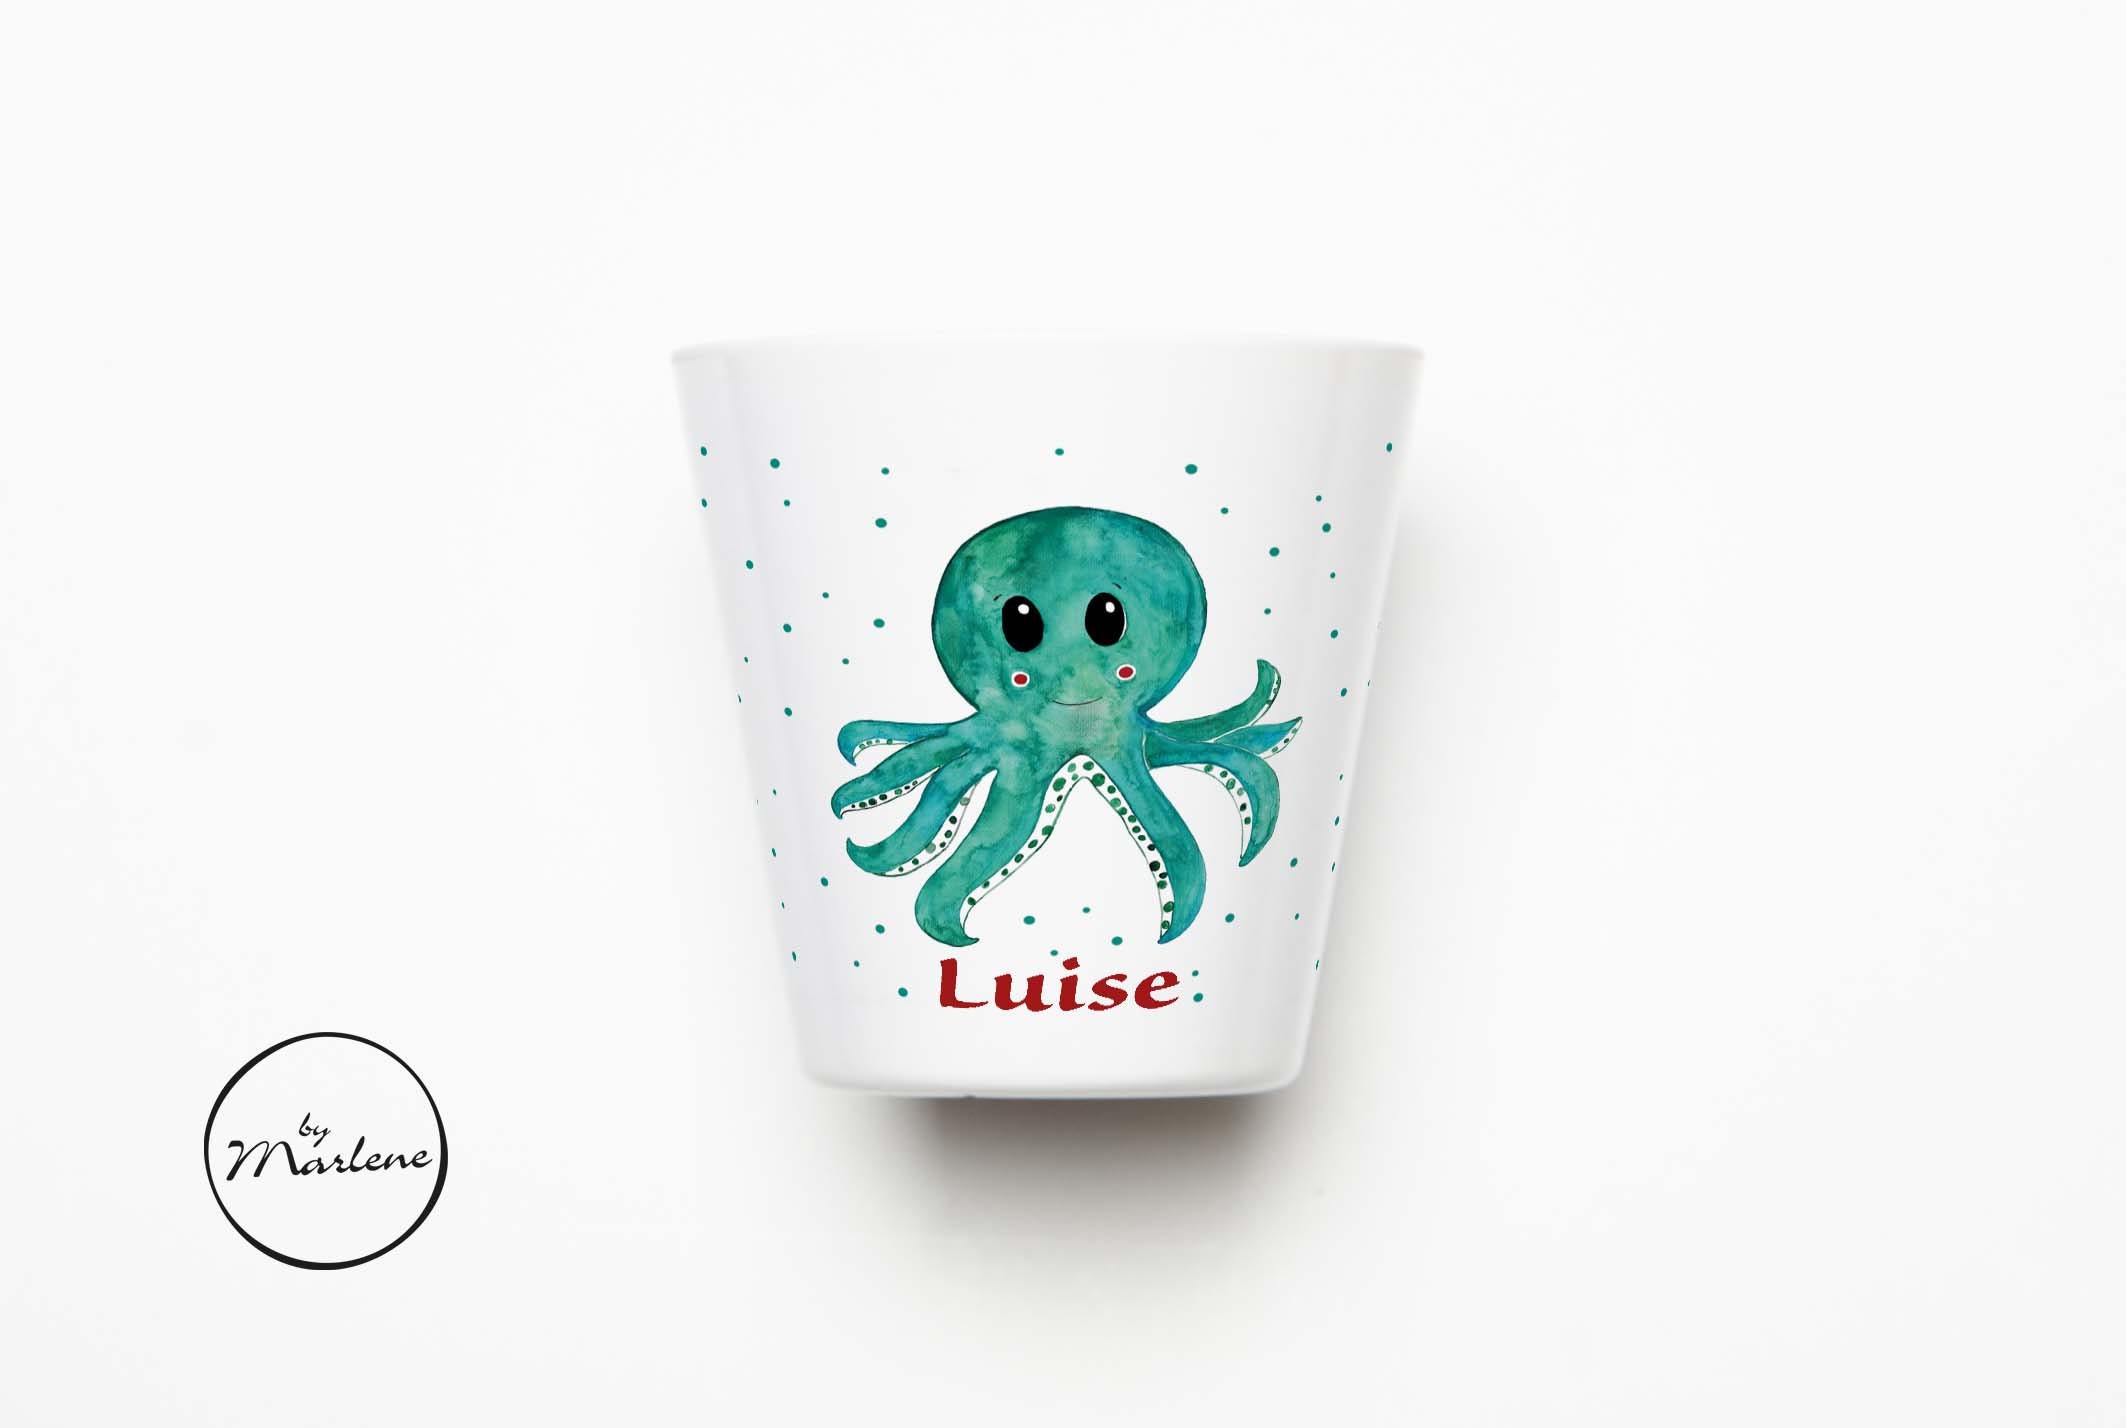 Octopus cup holder - .de